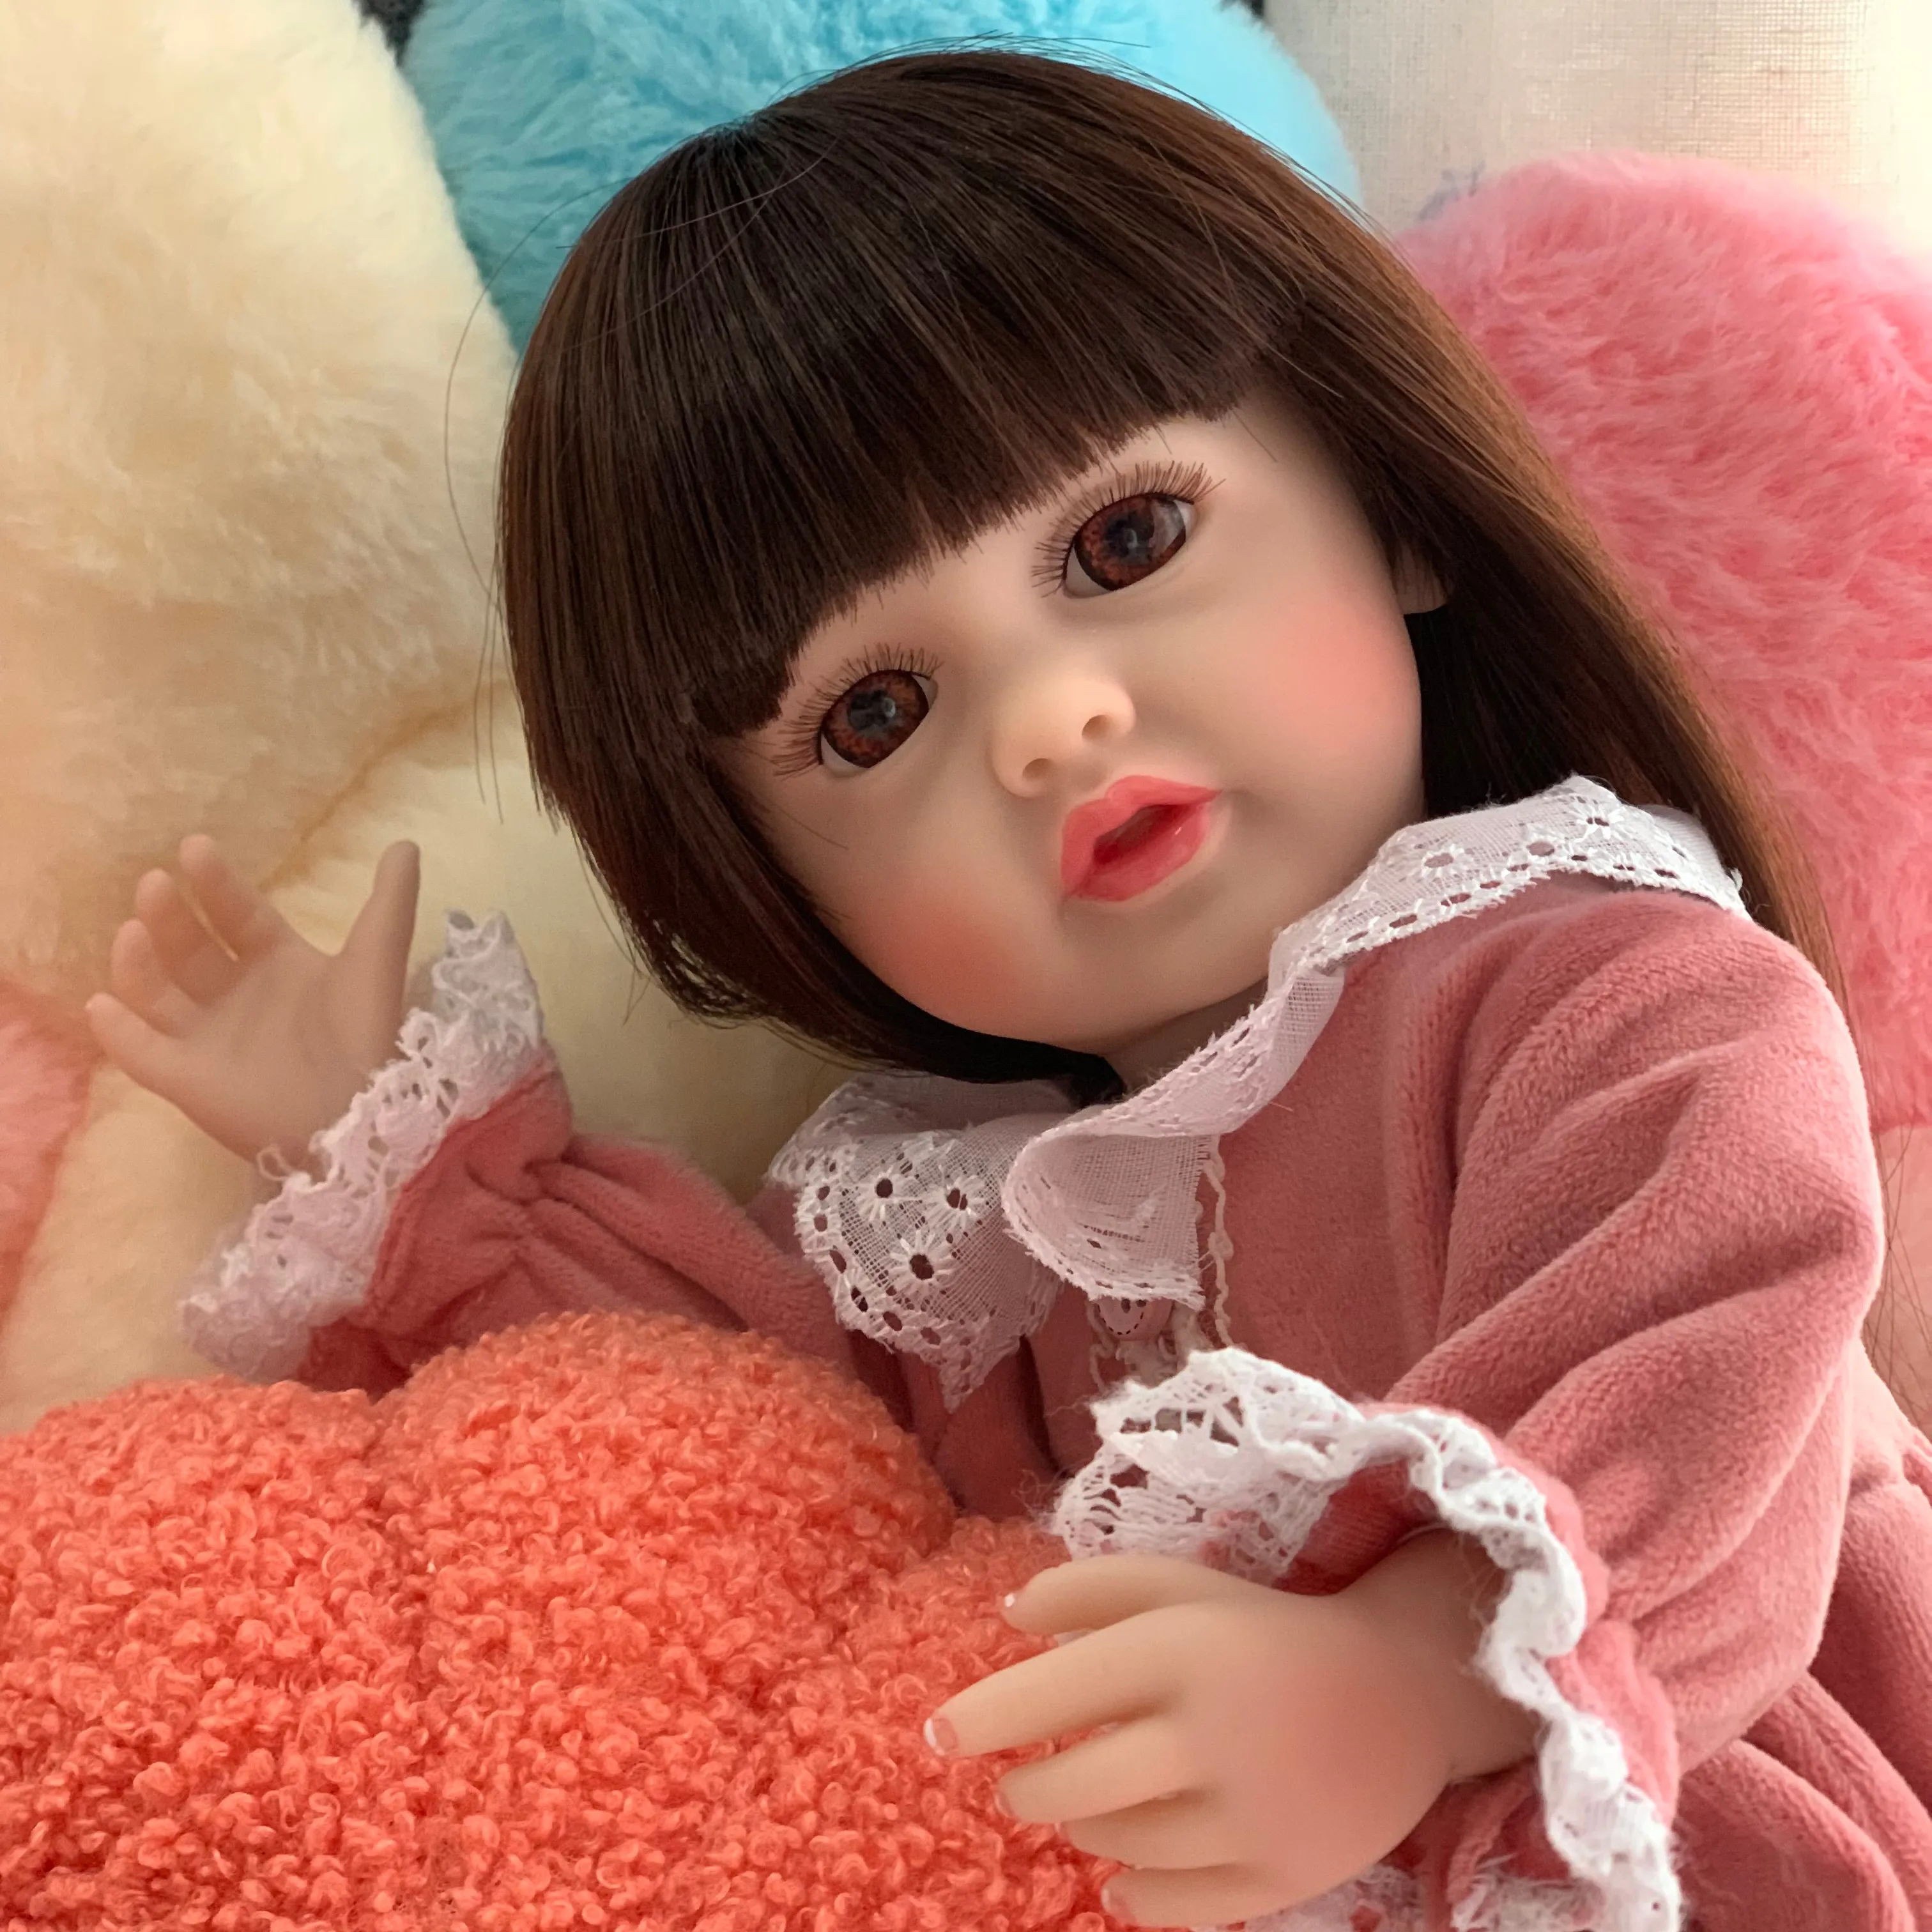 R & B vendita Miniland arriva bambole Reborn bambola bere vero giocattolo ragazze vestiti gratis pieno Mini Recien realistico all'ingrosso bambole rinate